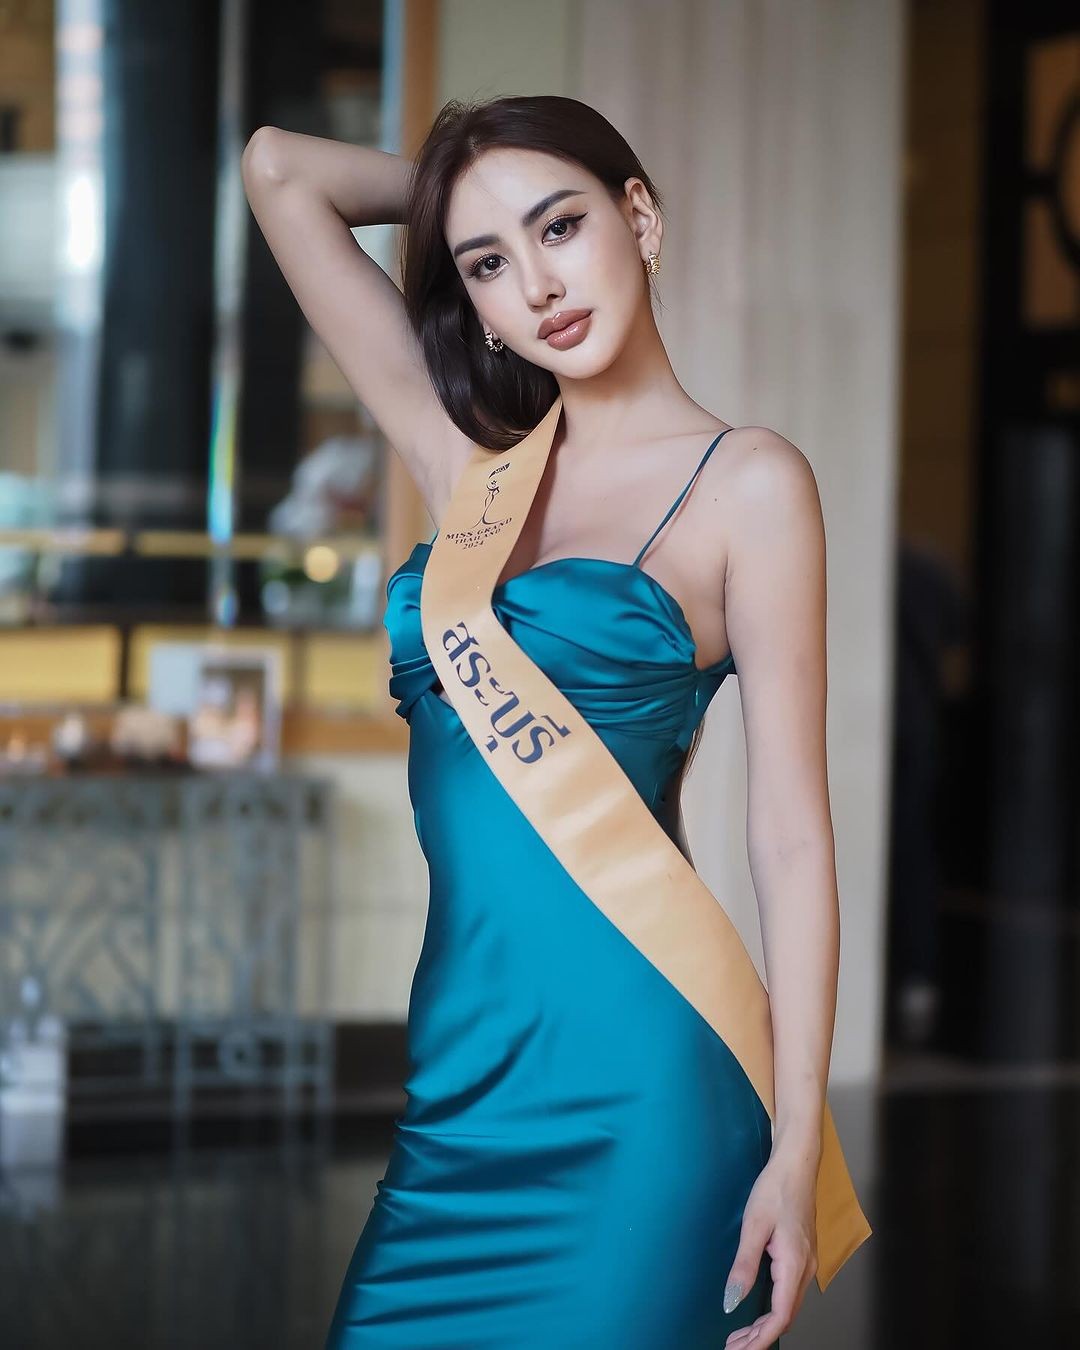 Người đẹp cao 1,76 m gây chú ý ở Hoa hậu Hòa bình Thái Lan ảnh 10